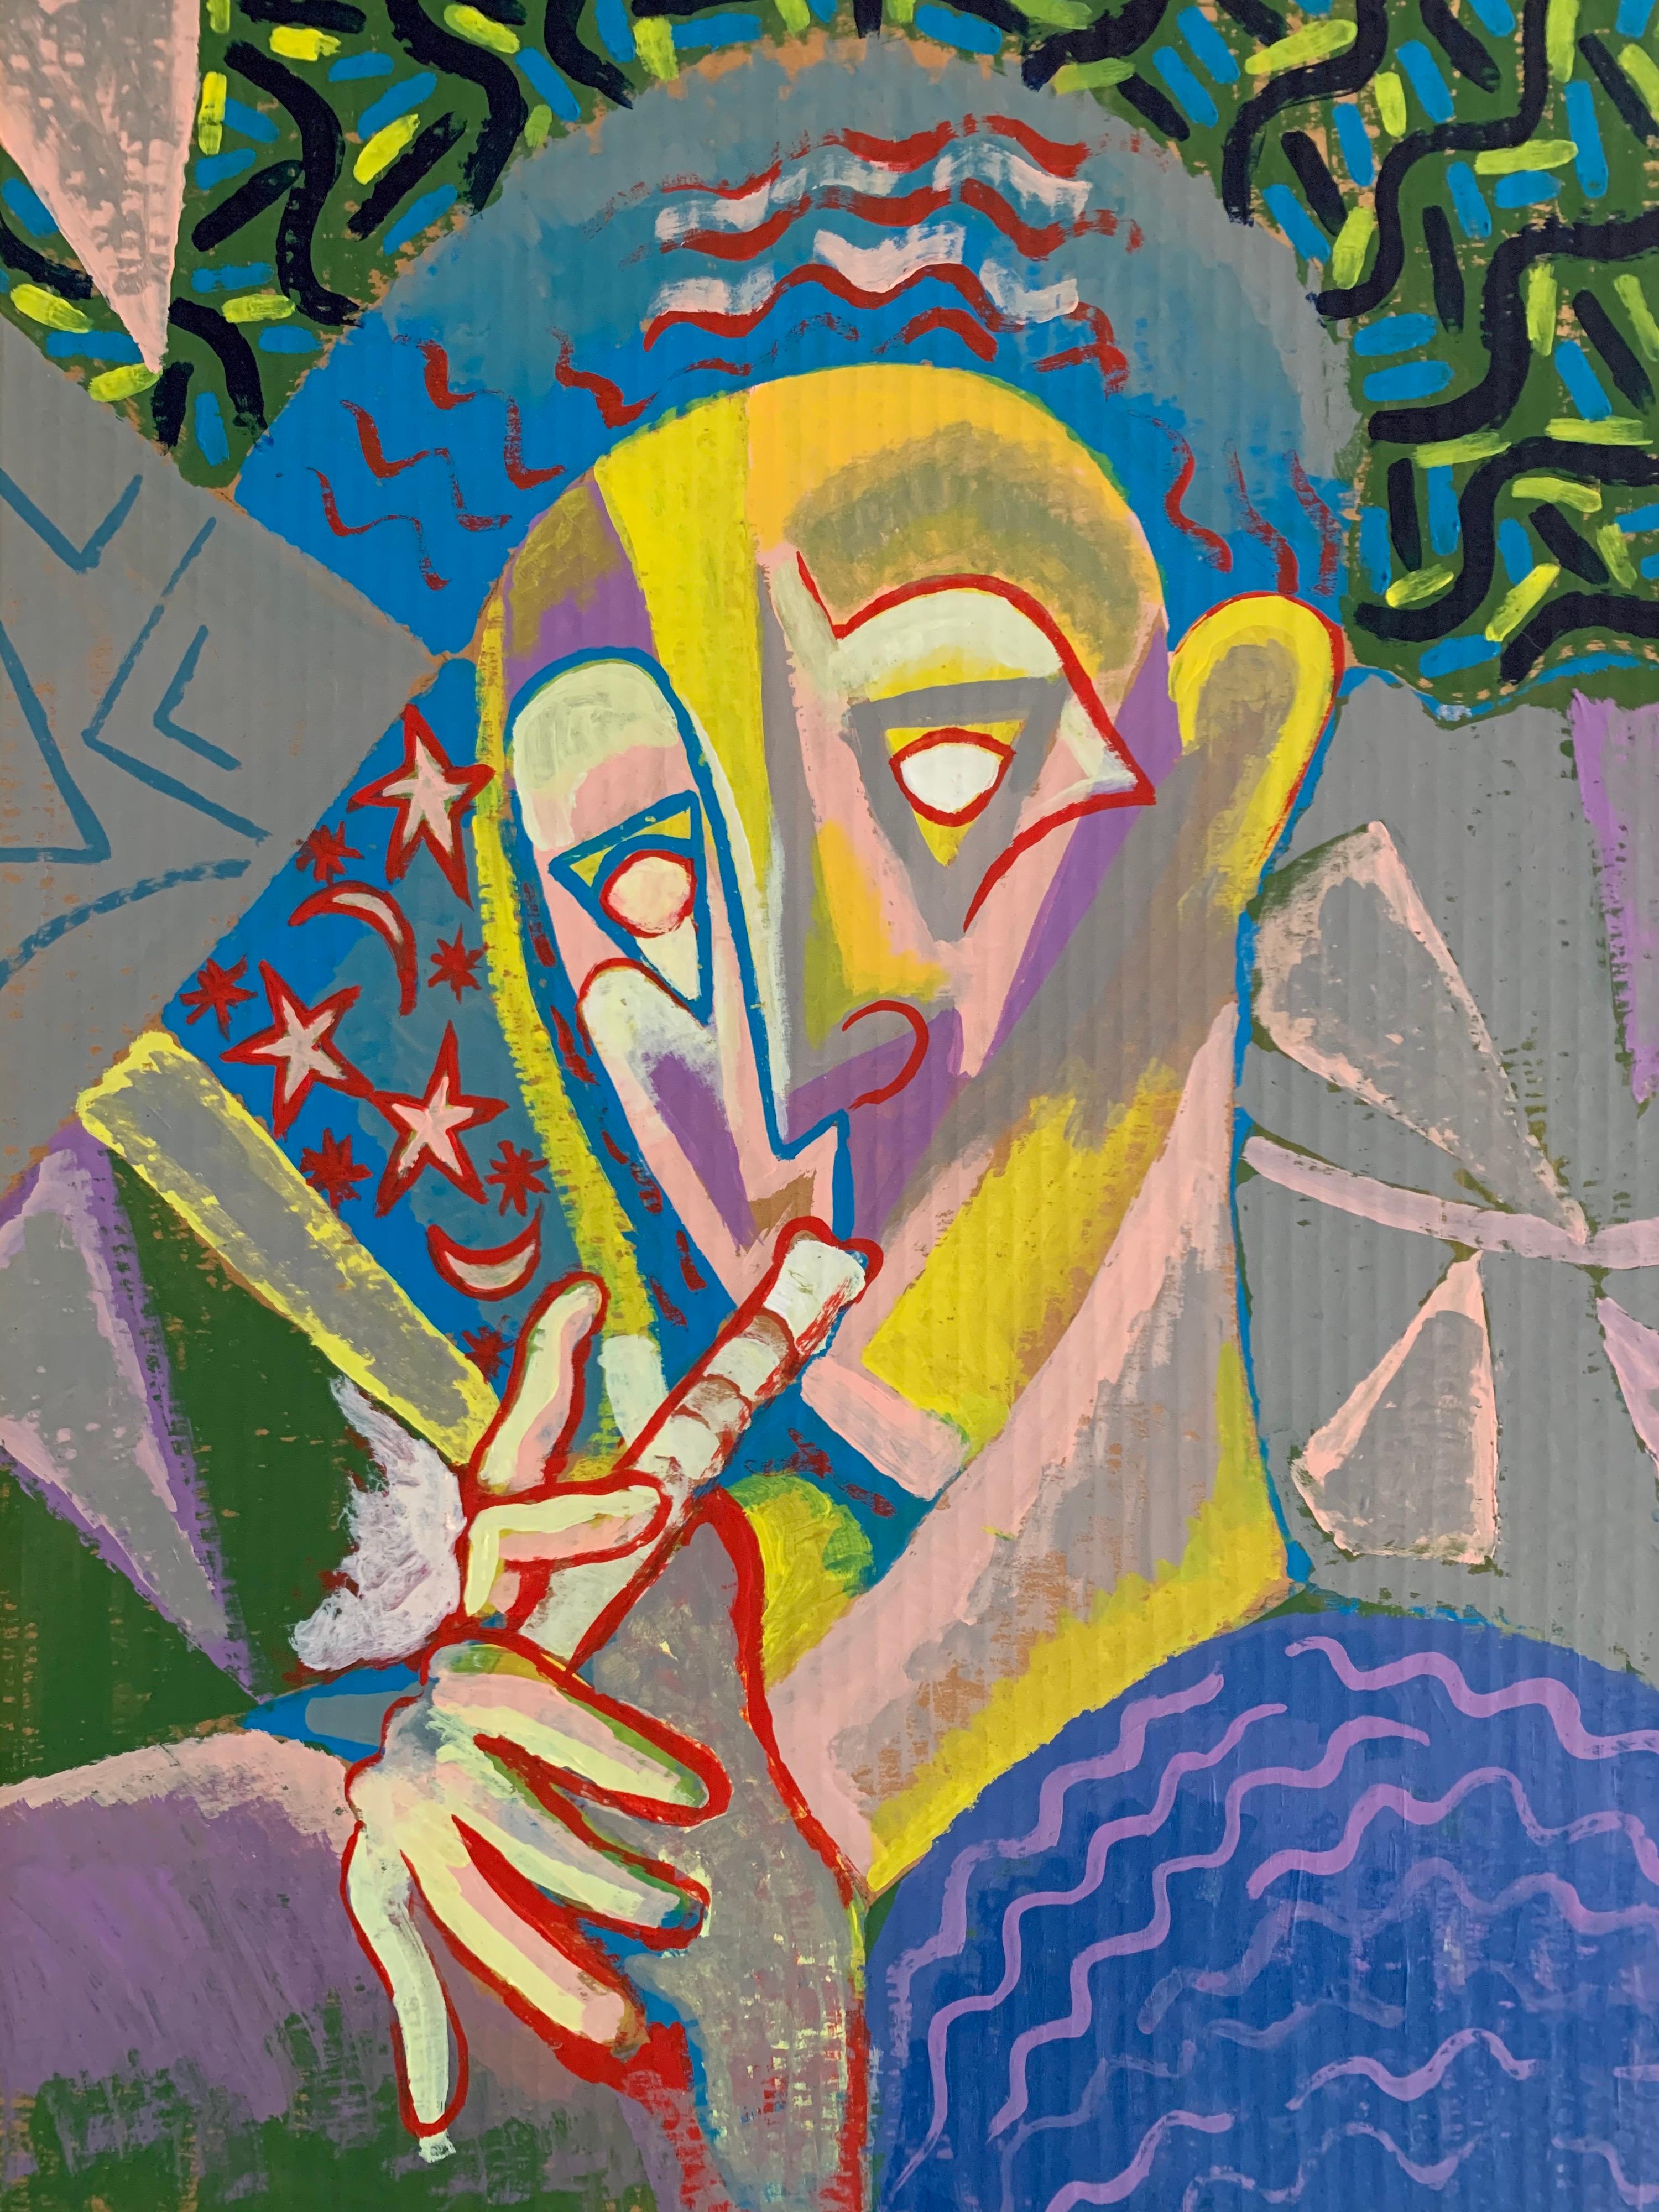 Abstraktes kubistisches Gemälde der 1970er Jahre - starke fauvistische Farbpalette